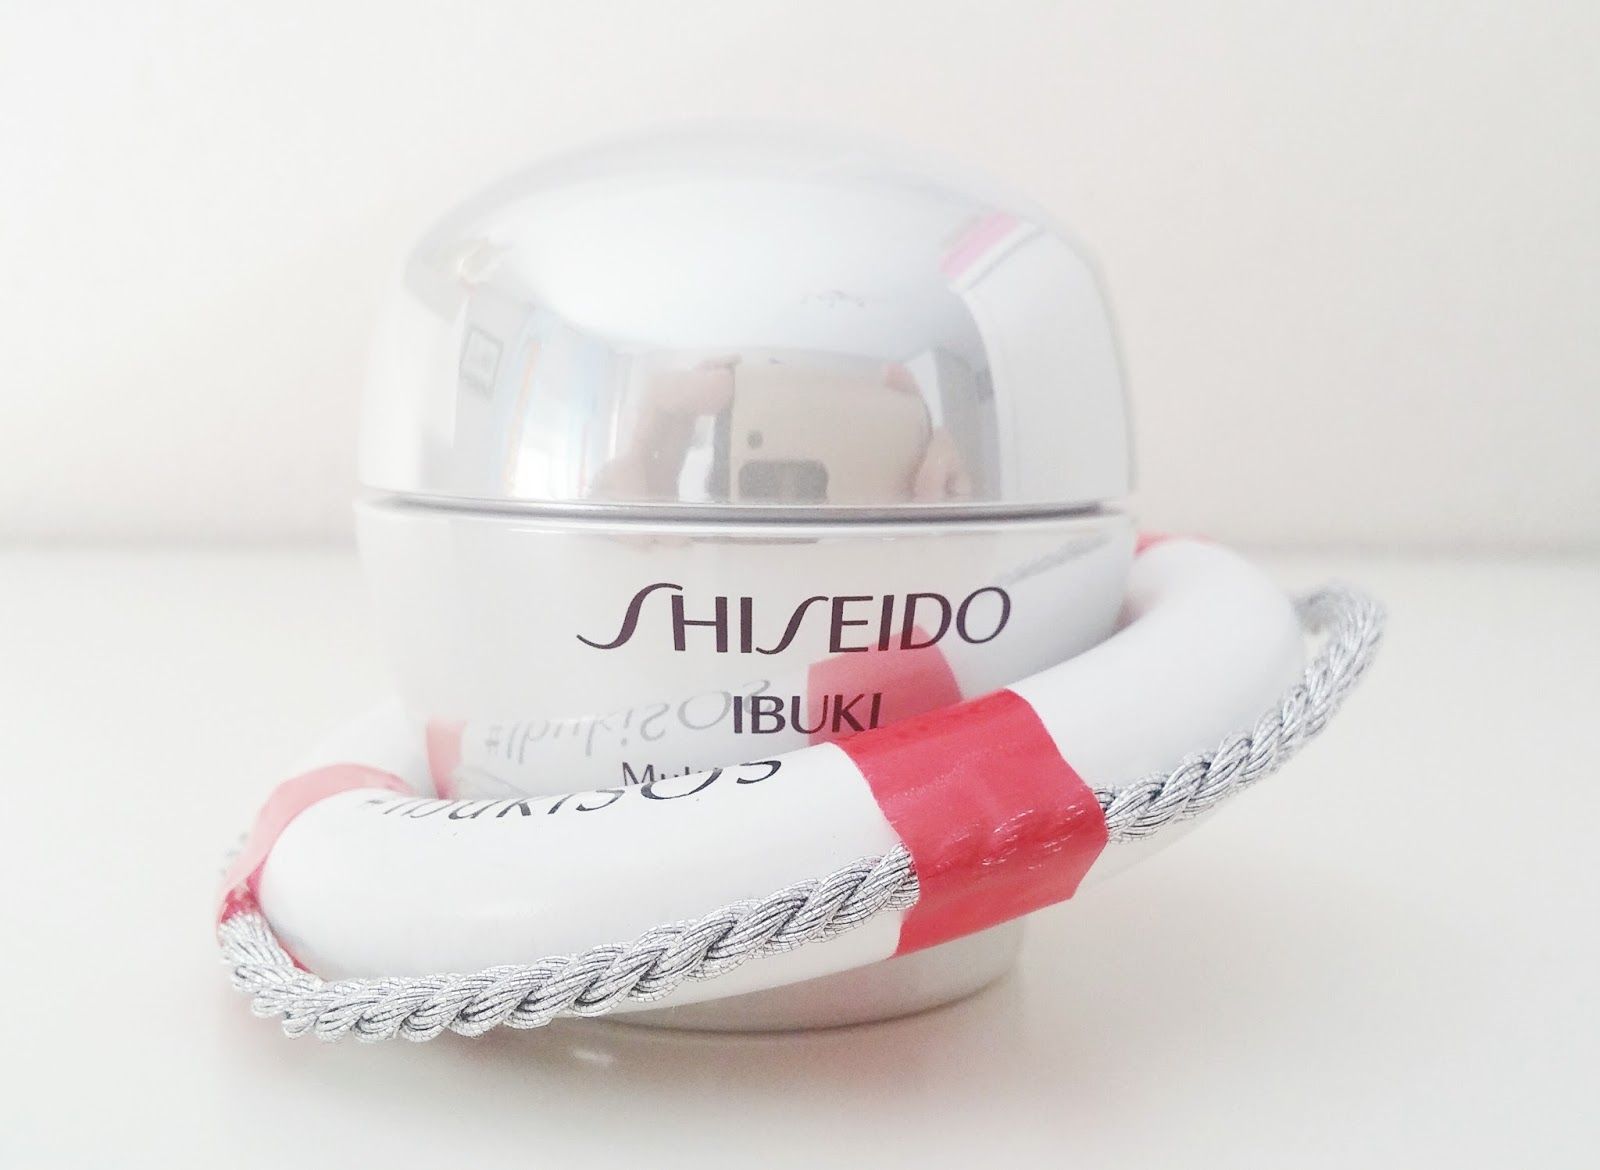 Ibuki Multisolution Gel de Shiseido